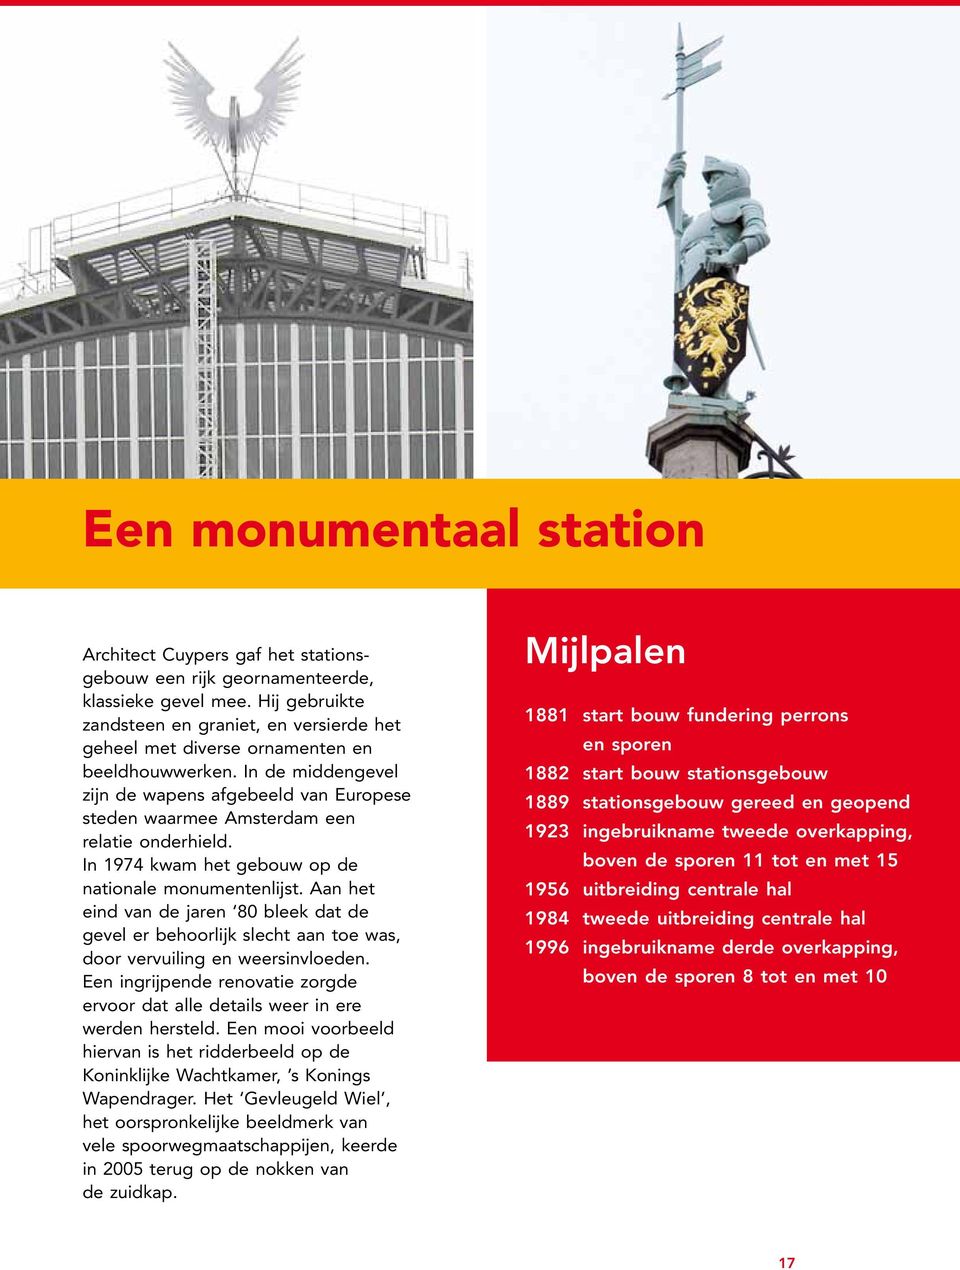 In de middengevel zijn de wapens afgebeeld van Europese steden waarmee Amsterdam een relatie onderhield. In 1974 kwam het gebouw op de nationale monumentenlijst.